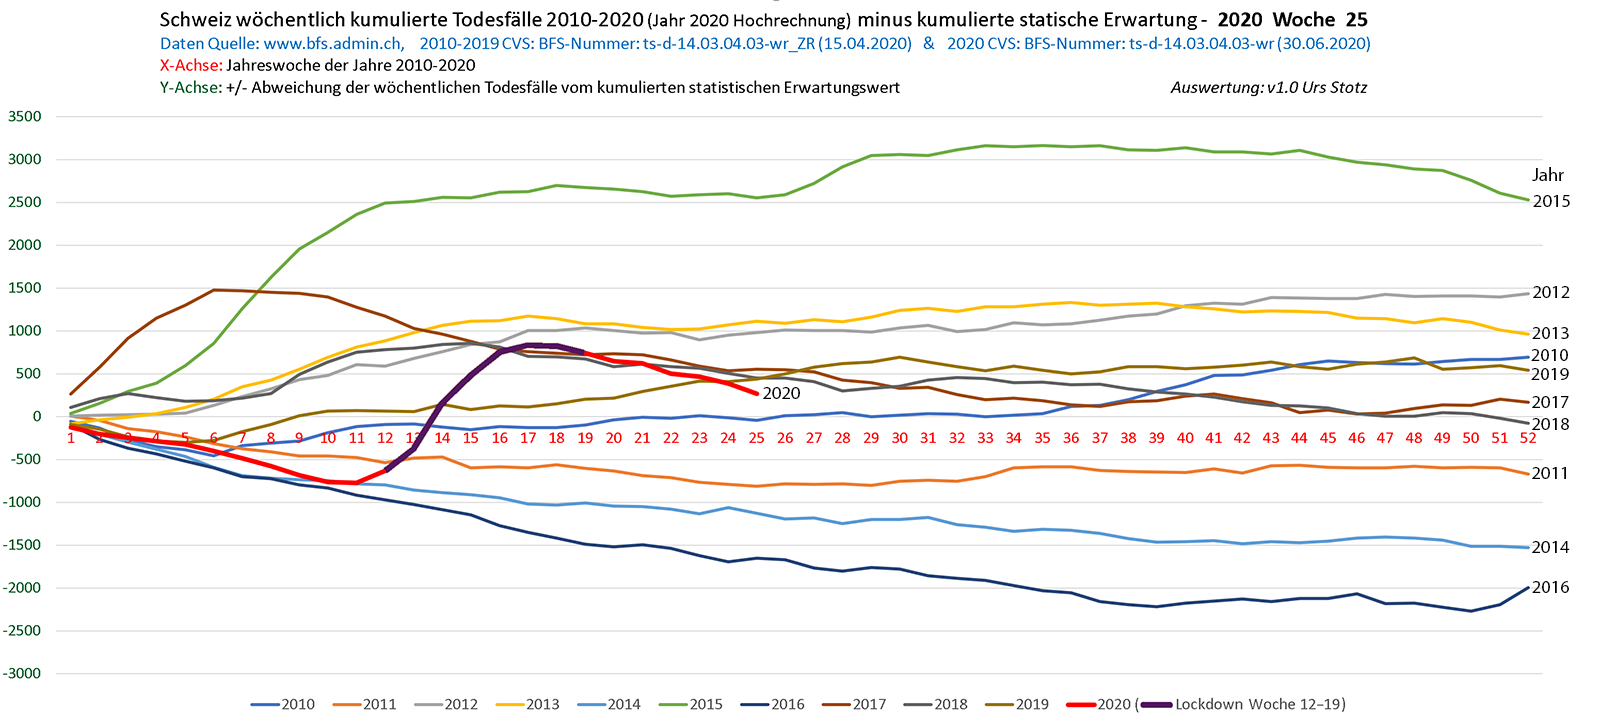 שוויץ: התמותה הכוללת ביחס לנורמה, 2010-2020